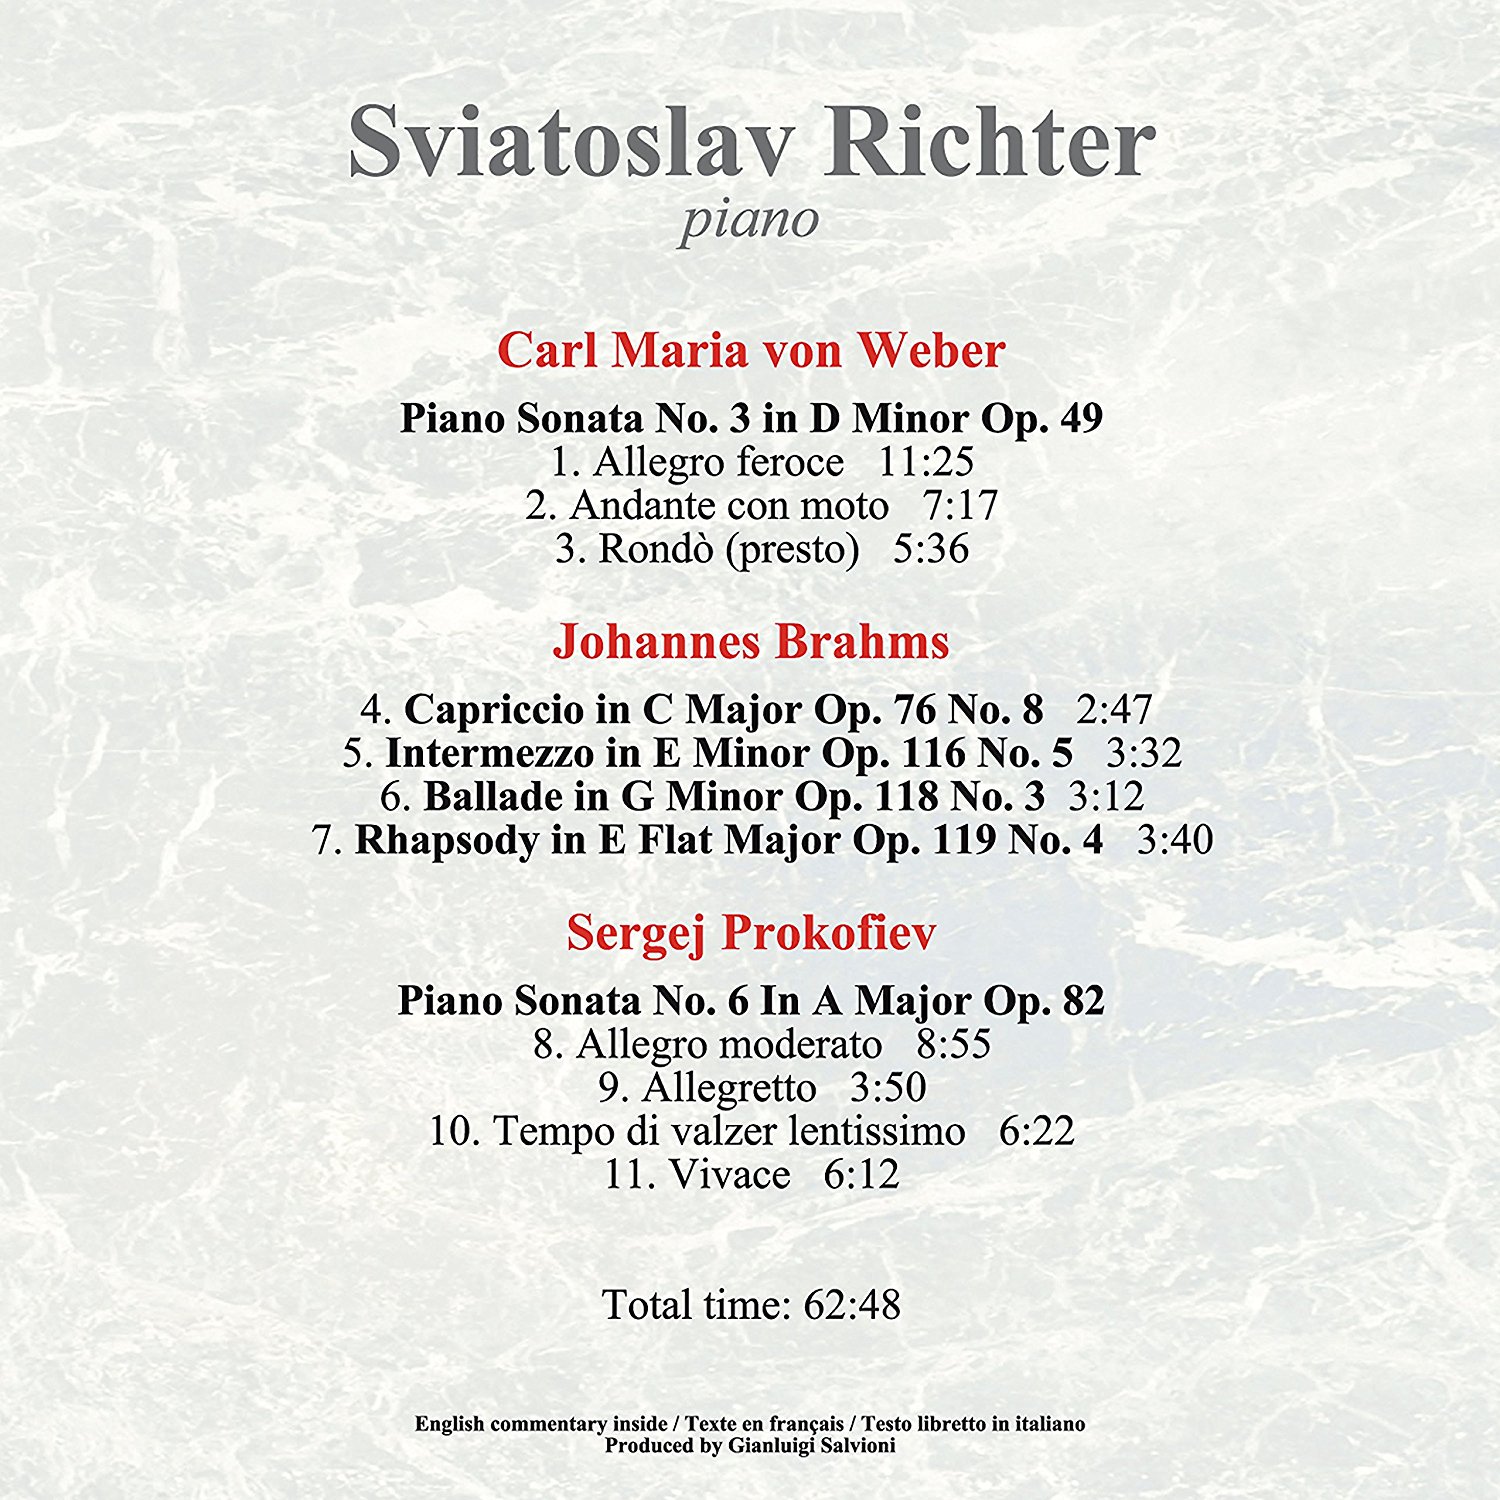 Piano Sonatas | Sviatoslav Richter